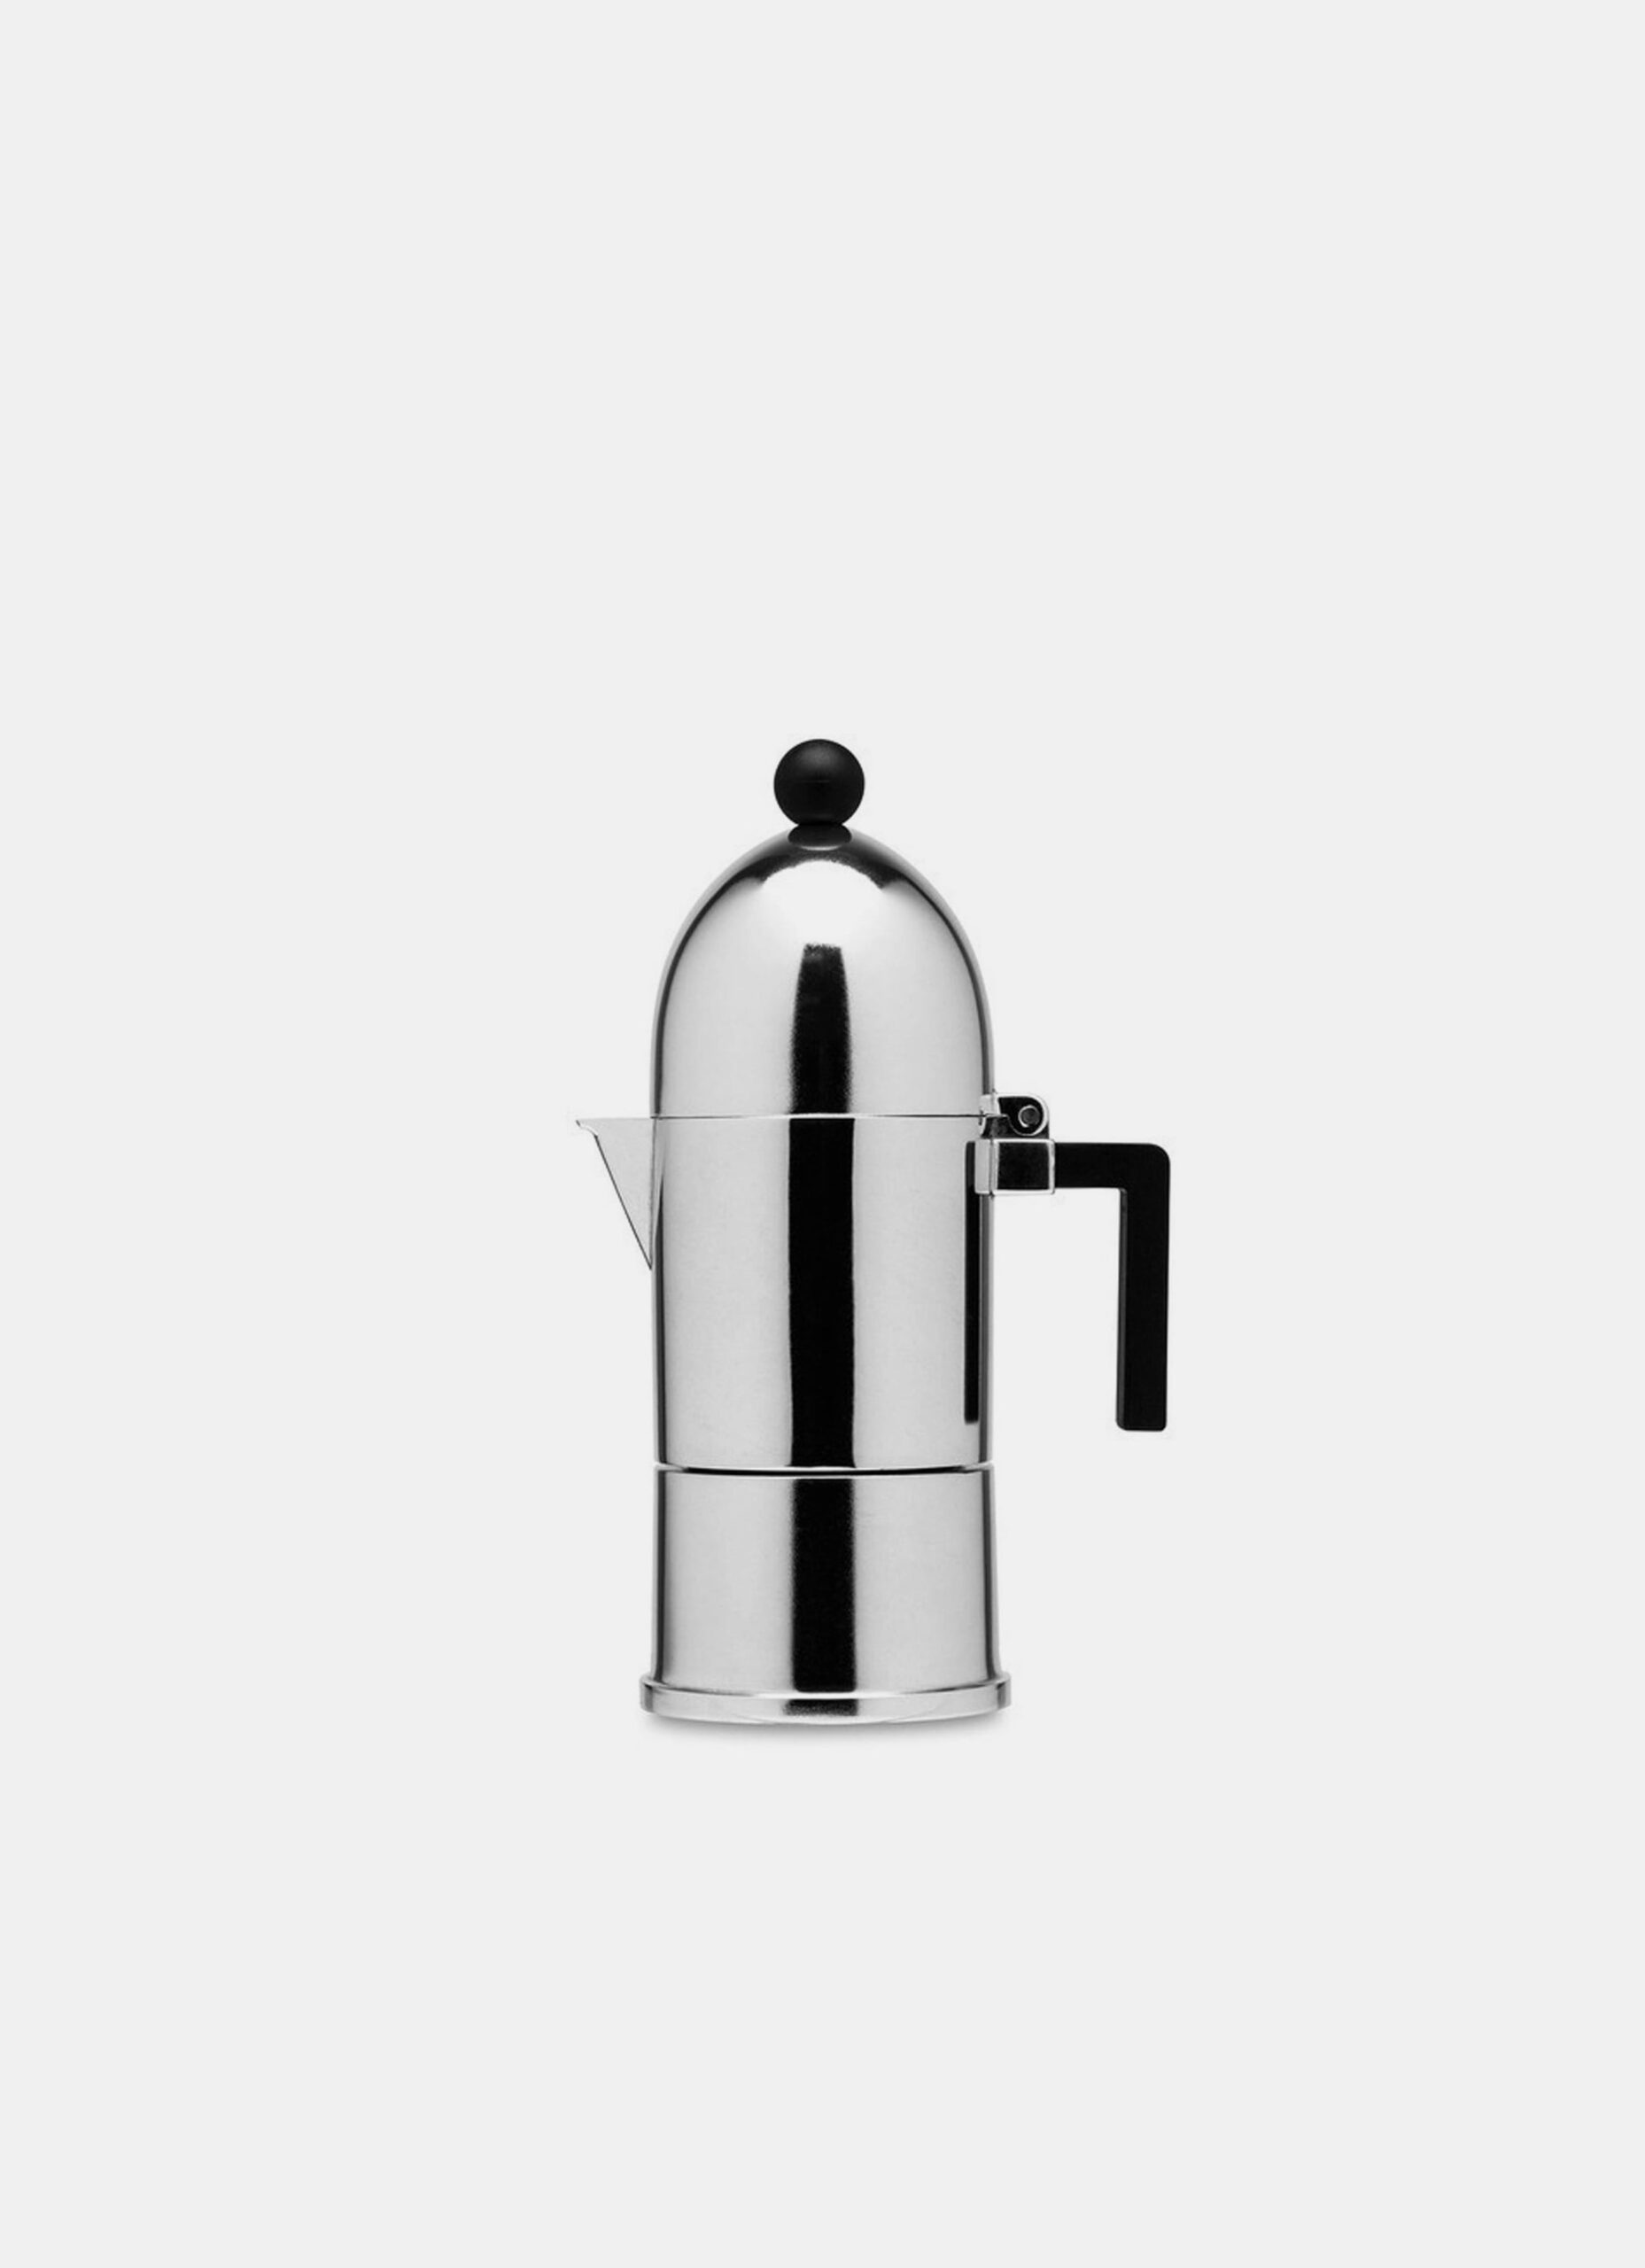 Alessi - La Cupola - Espresso maker - Aldo Rossi - 3 cups